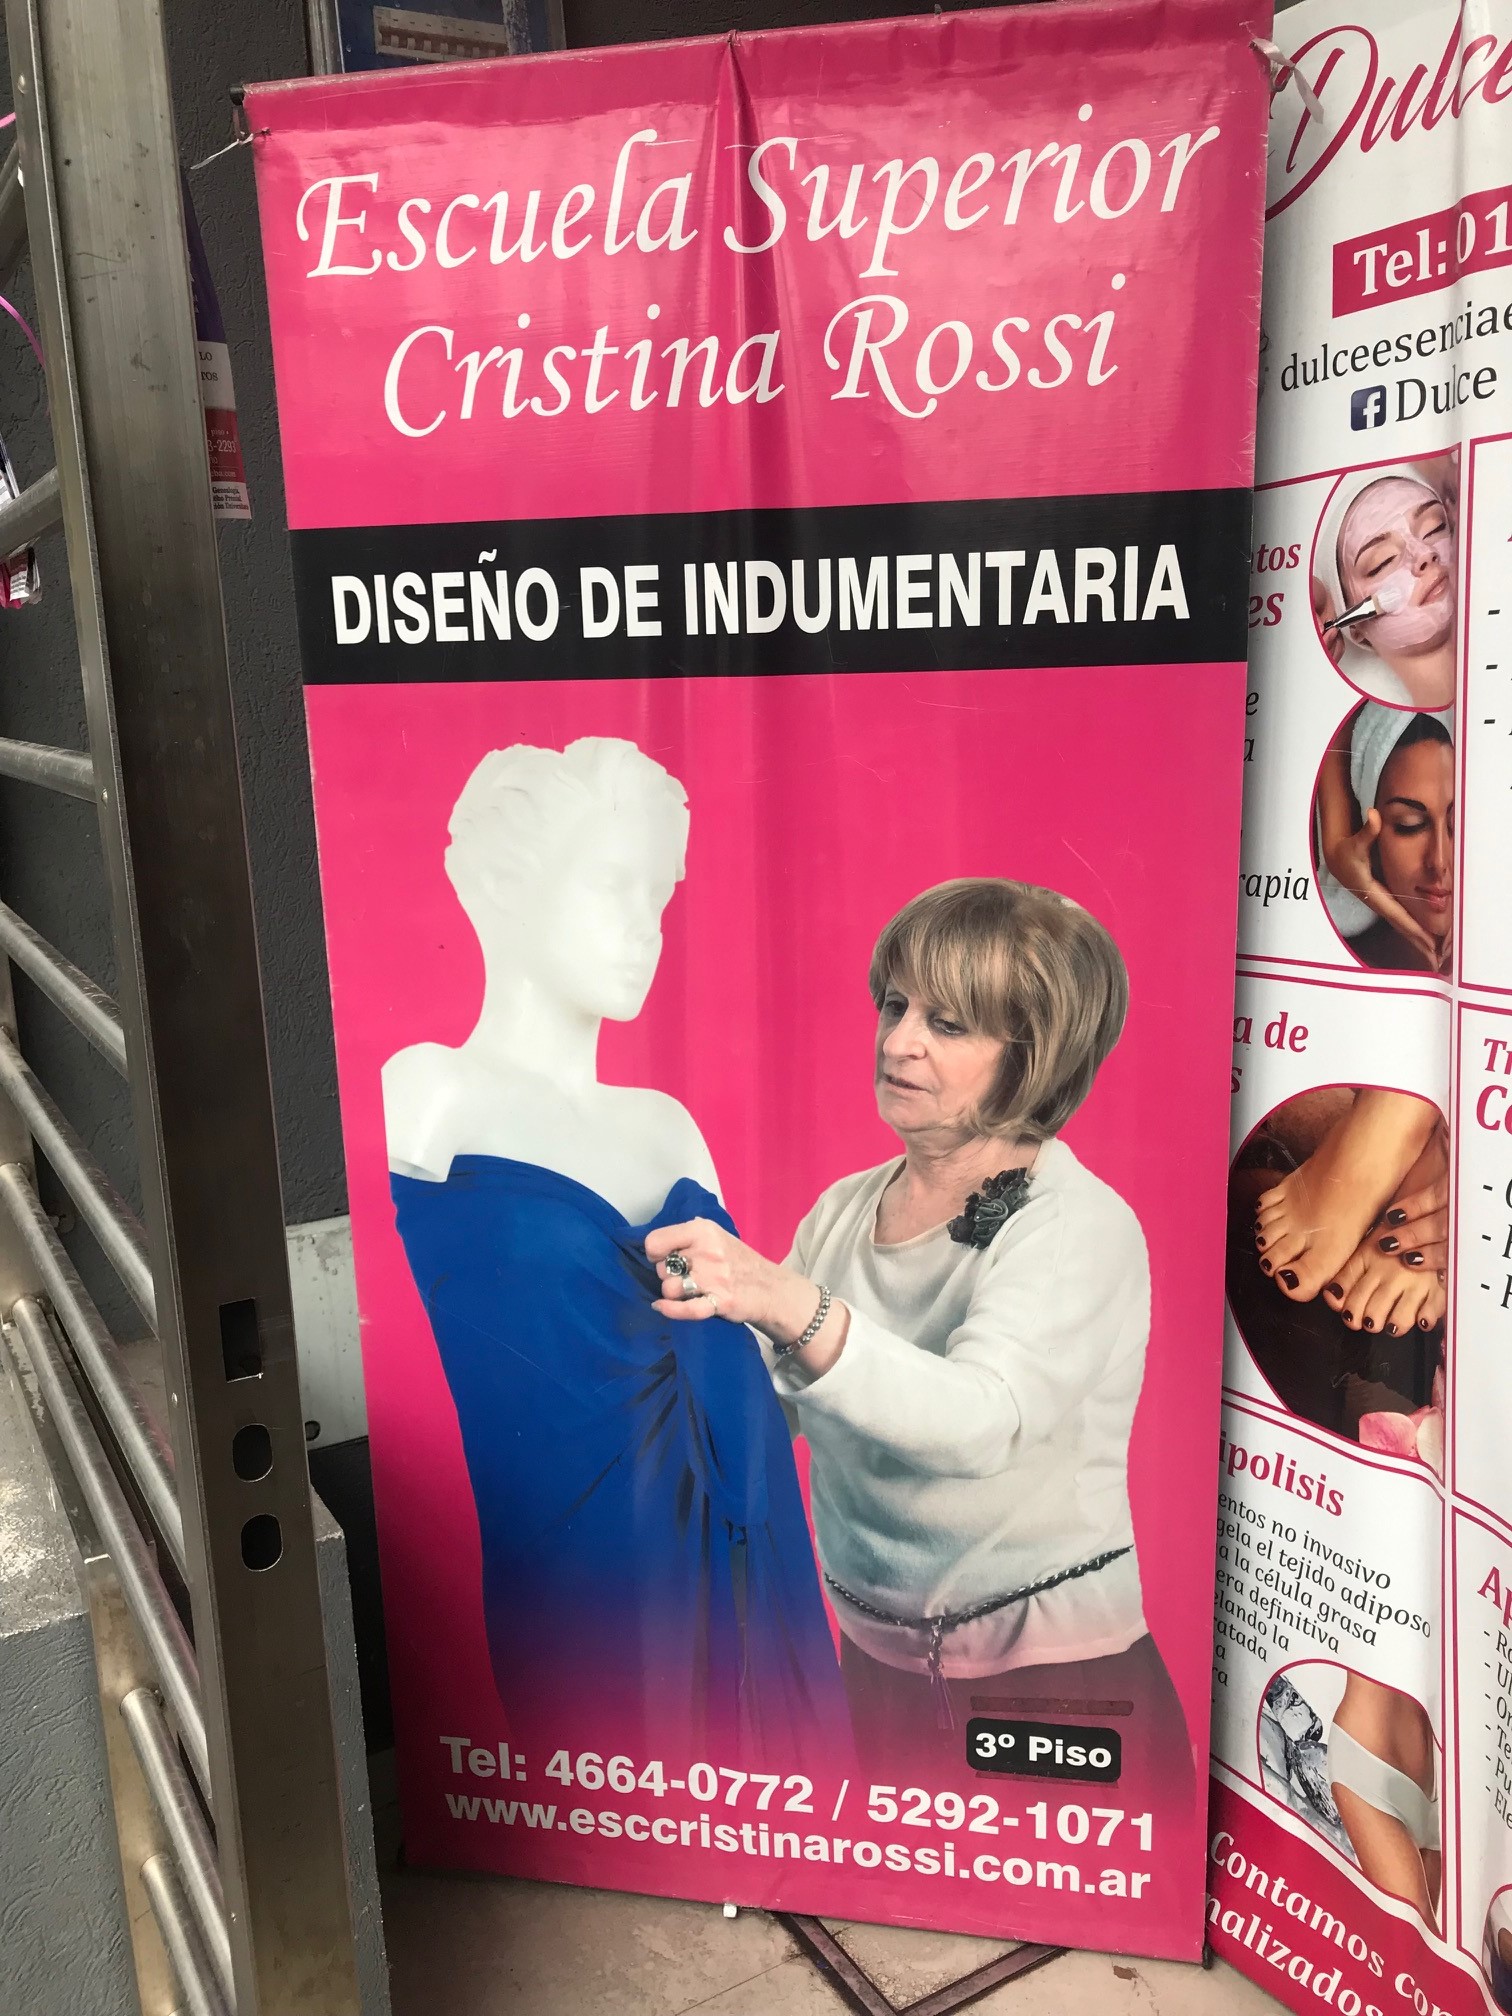 Escuela Superior Cristina Rossi